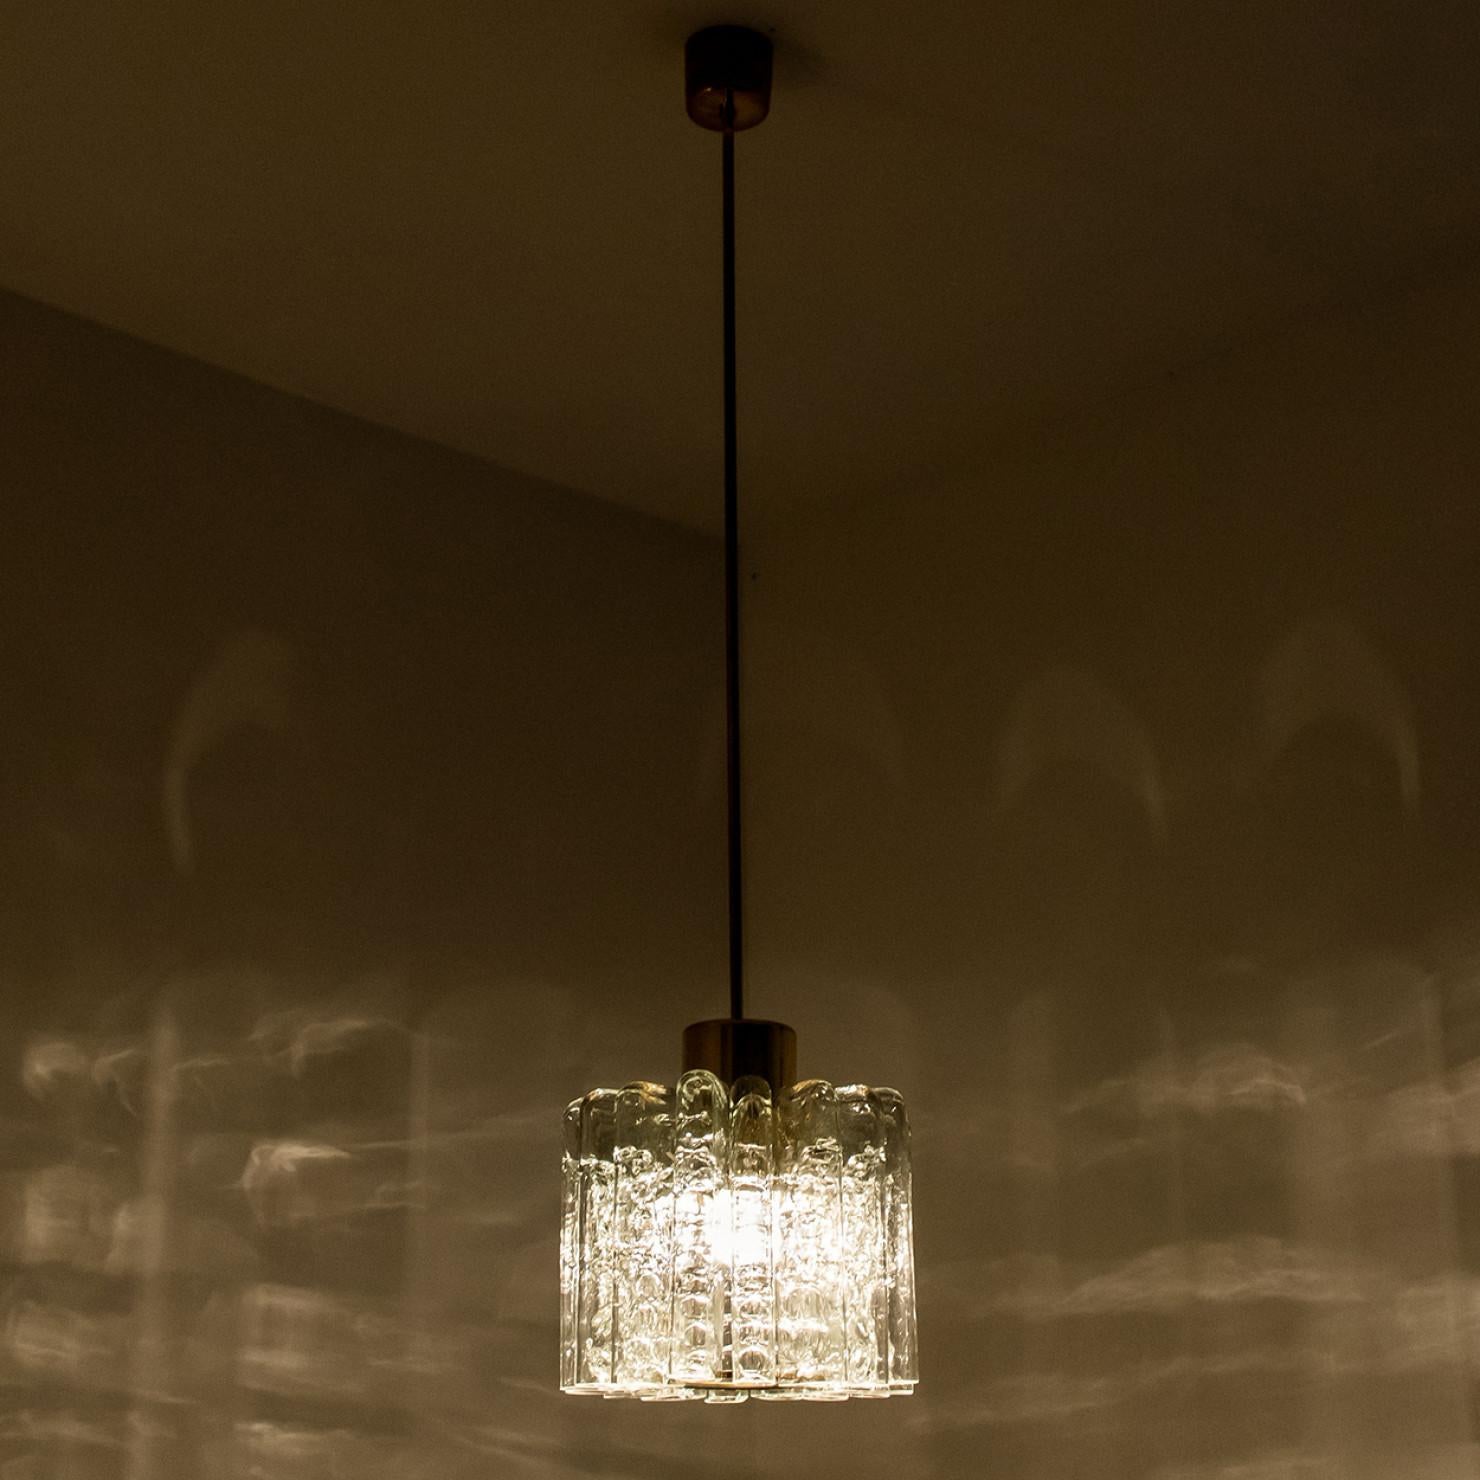 Tulpenförmige Pendelleuchte aus Glas, hergestellt von Doria Leuchten Deutschland um 1960.

Diese handgefertigte Pendelleuchte besteht aus einem Messingstab mit einer Reihe von strukturierten runden röhrenförmigen Glasstäben. Durch die Kombination